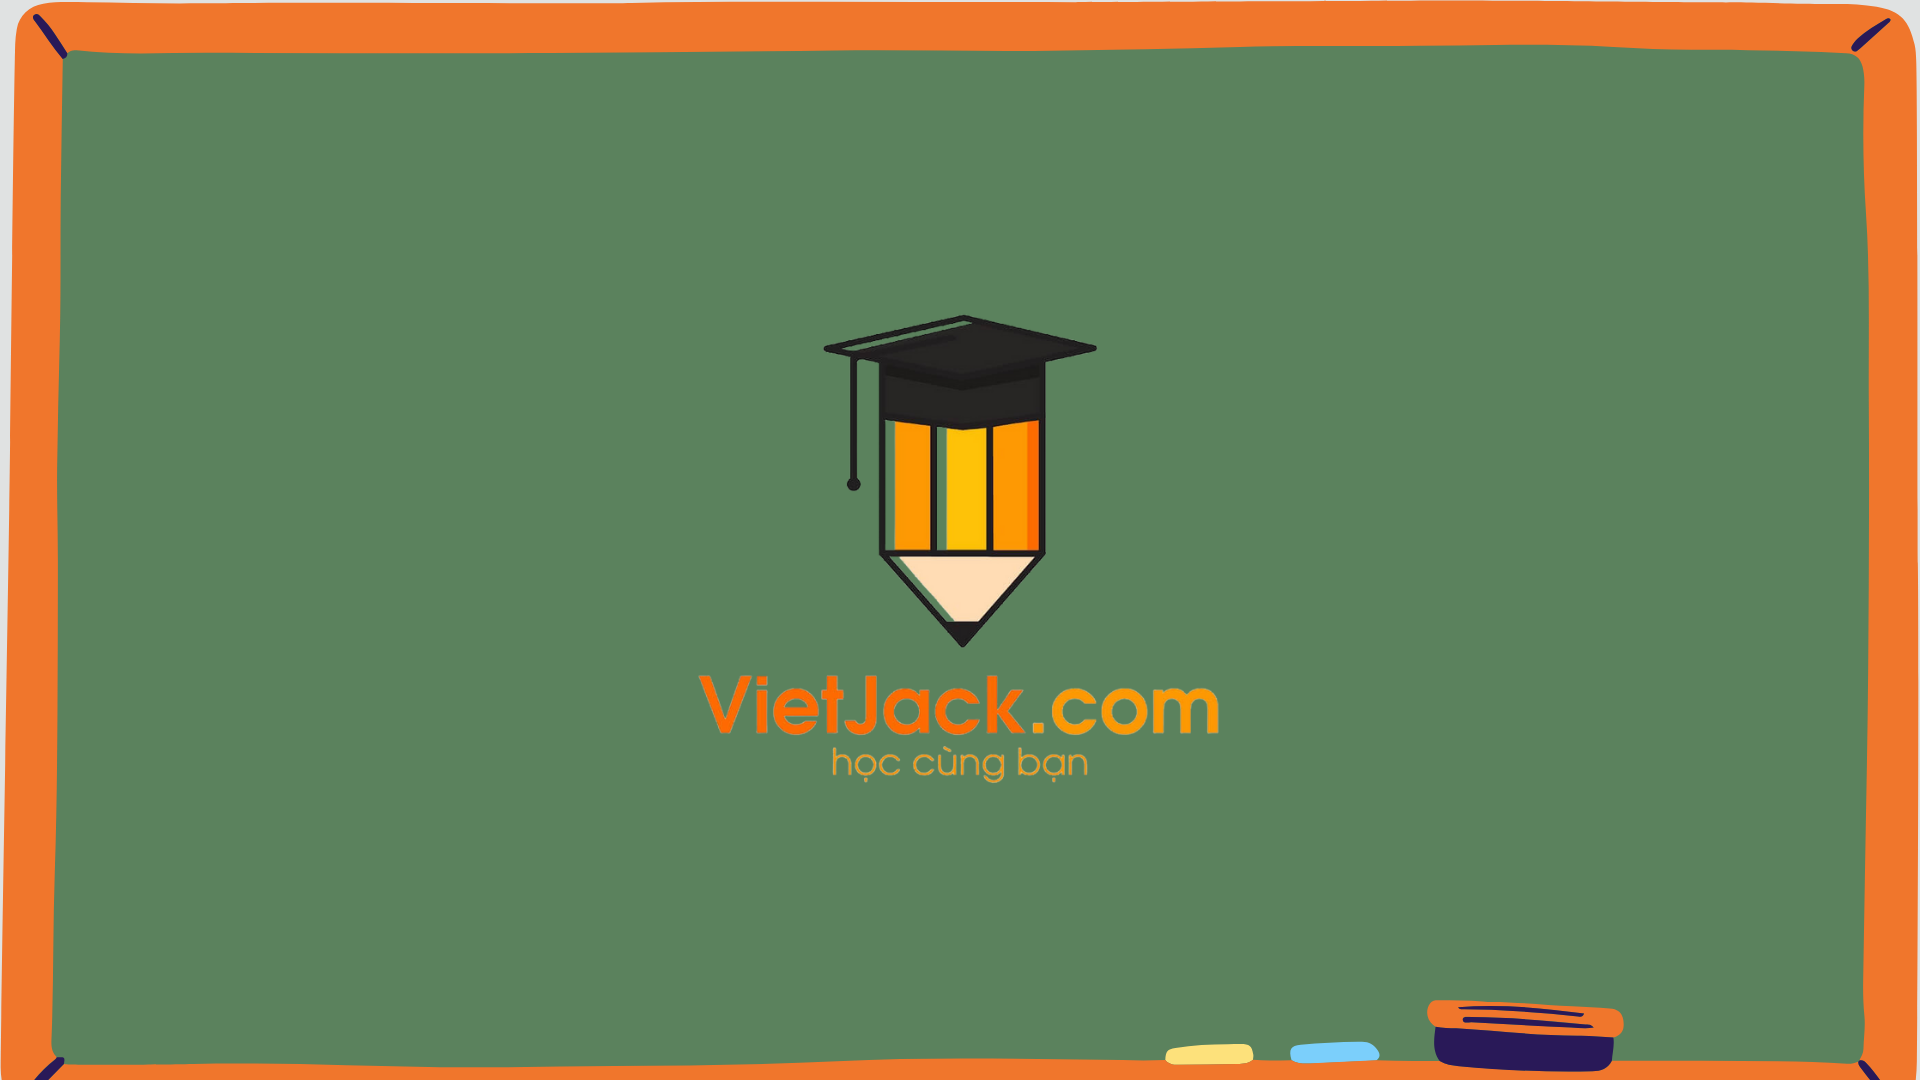 Vietjack - app luyện thi đánh giá năng lực uy tín nhất